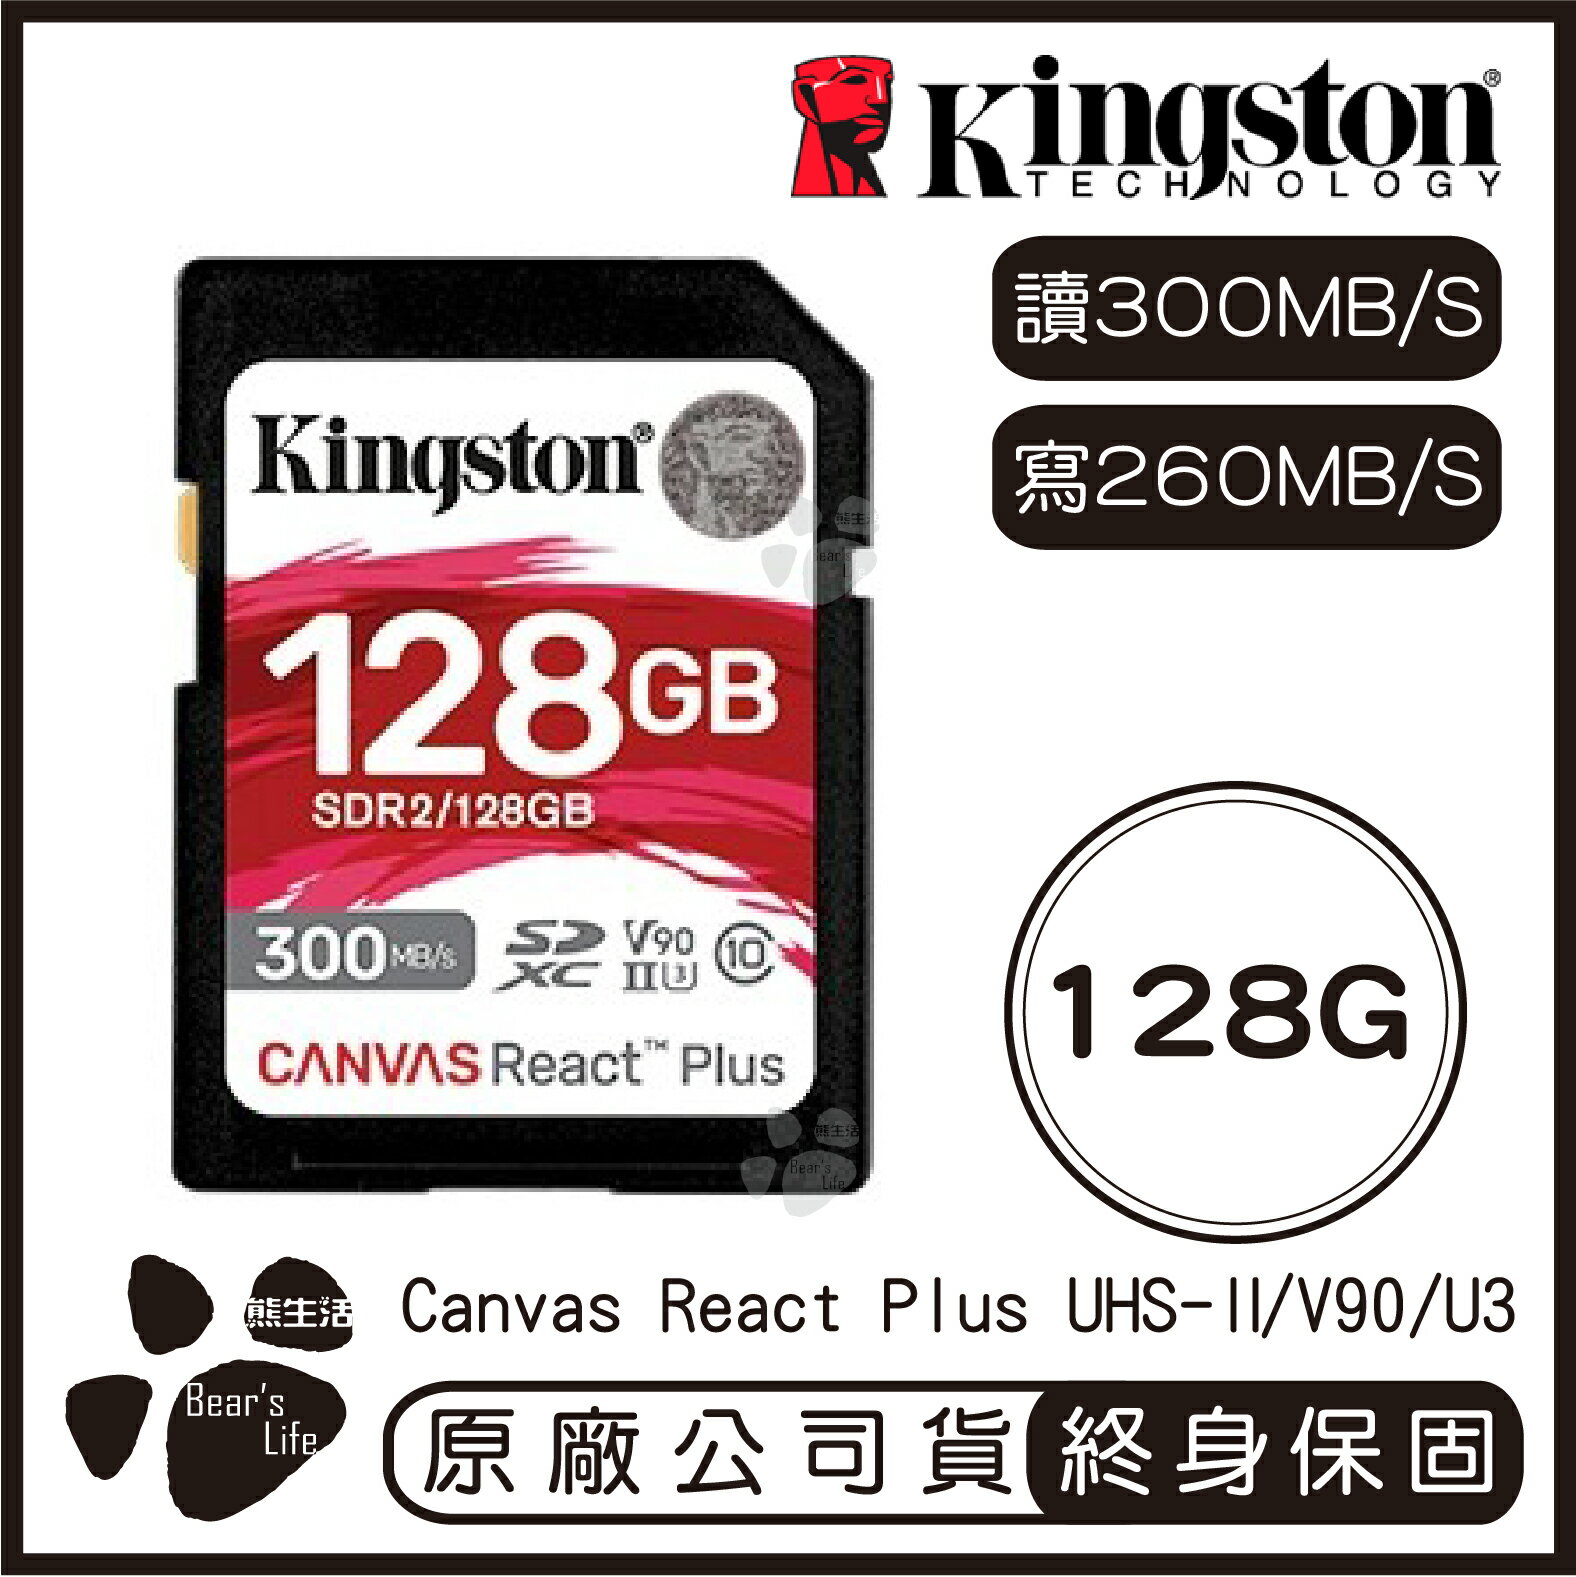 【9%點數】【Kingston金士頓】Canvas React Plus SD記憶卡 128G 讀300MB/s 寫260MB/s【APP下單9%點數回饋】【限定樂天APP下單】